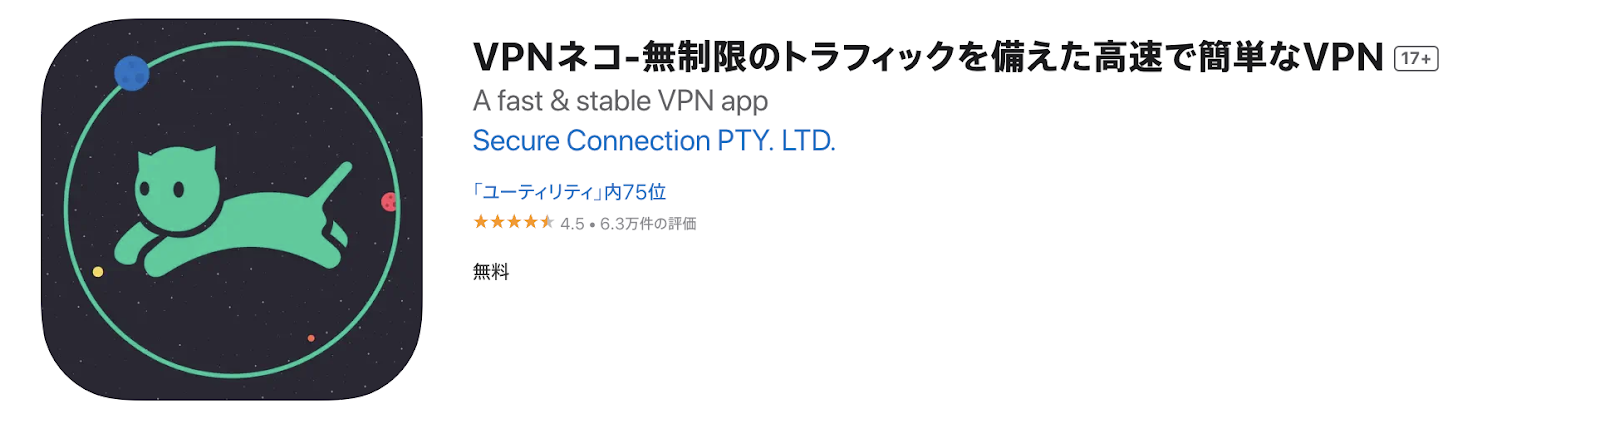 VPNネコ